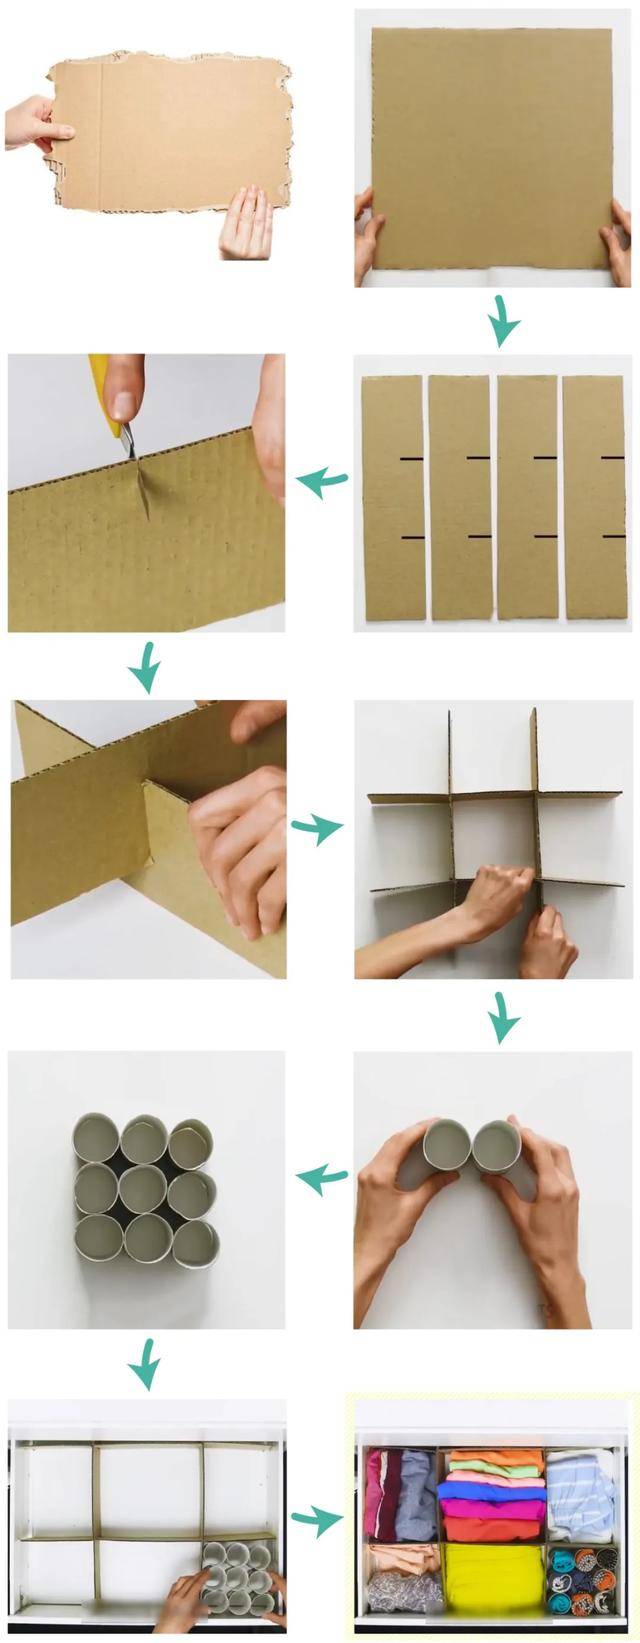 卷纸筒 纸皮的组合,可以 变成抽屉分隔板和袜子收纳盒.